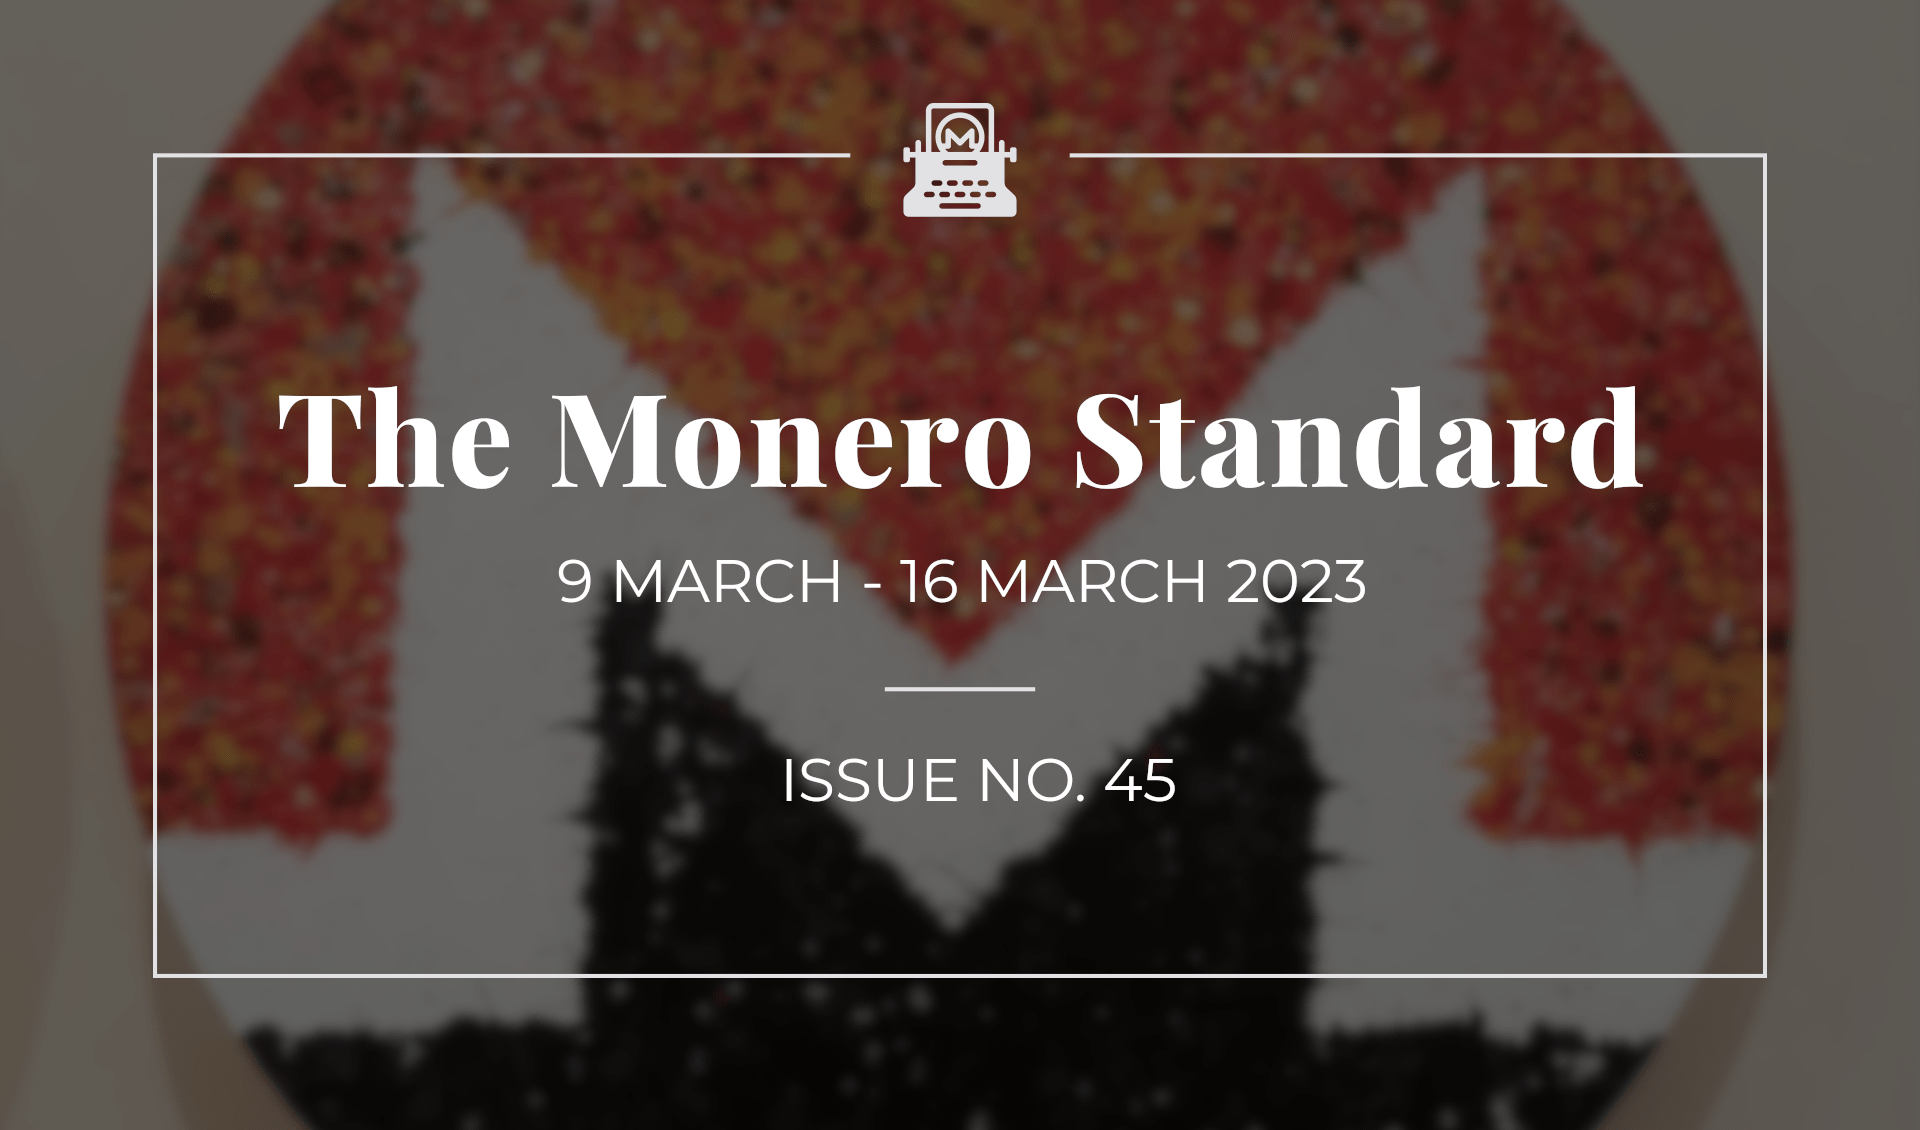 The Monero Standard #45: 9 March 2023 - 16 March 2023